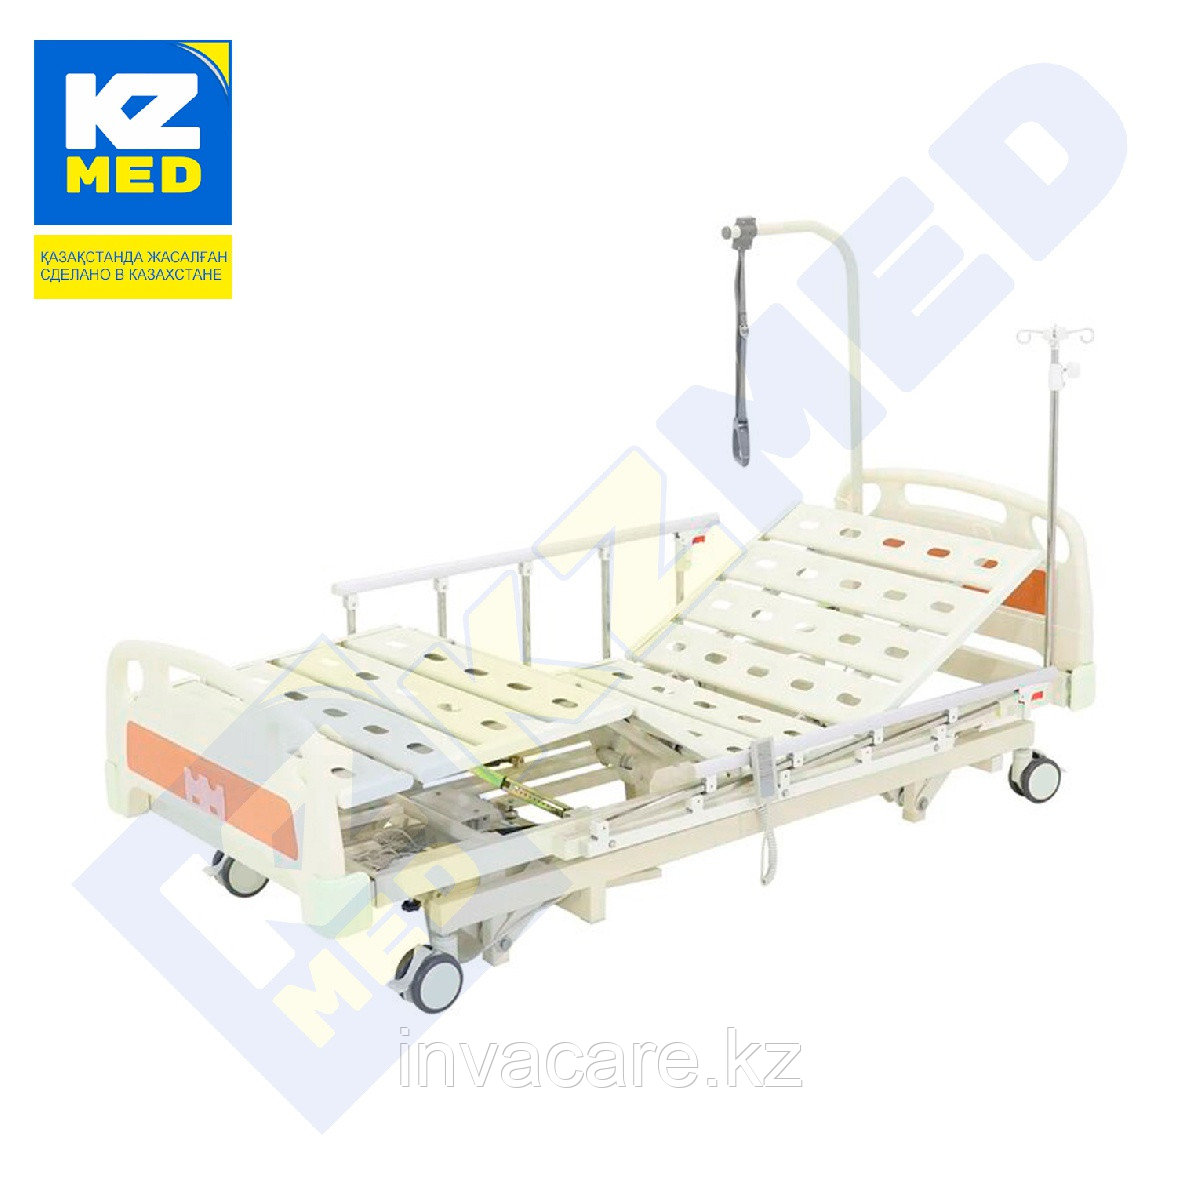 Кровать медицинская "KZMED" (304E-U спинки ABS)(c удлинением), белый